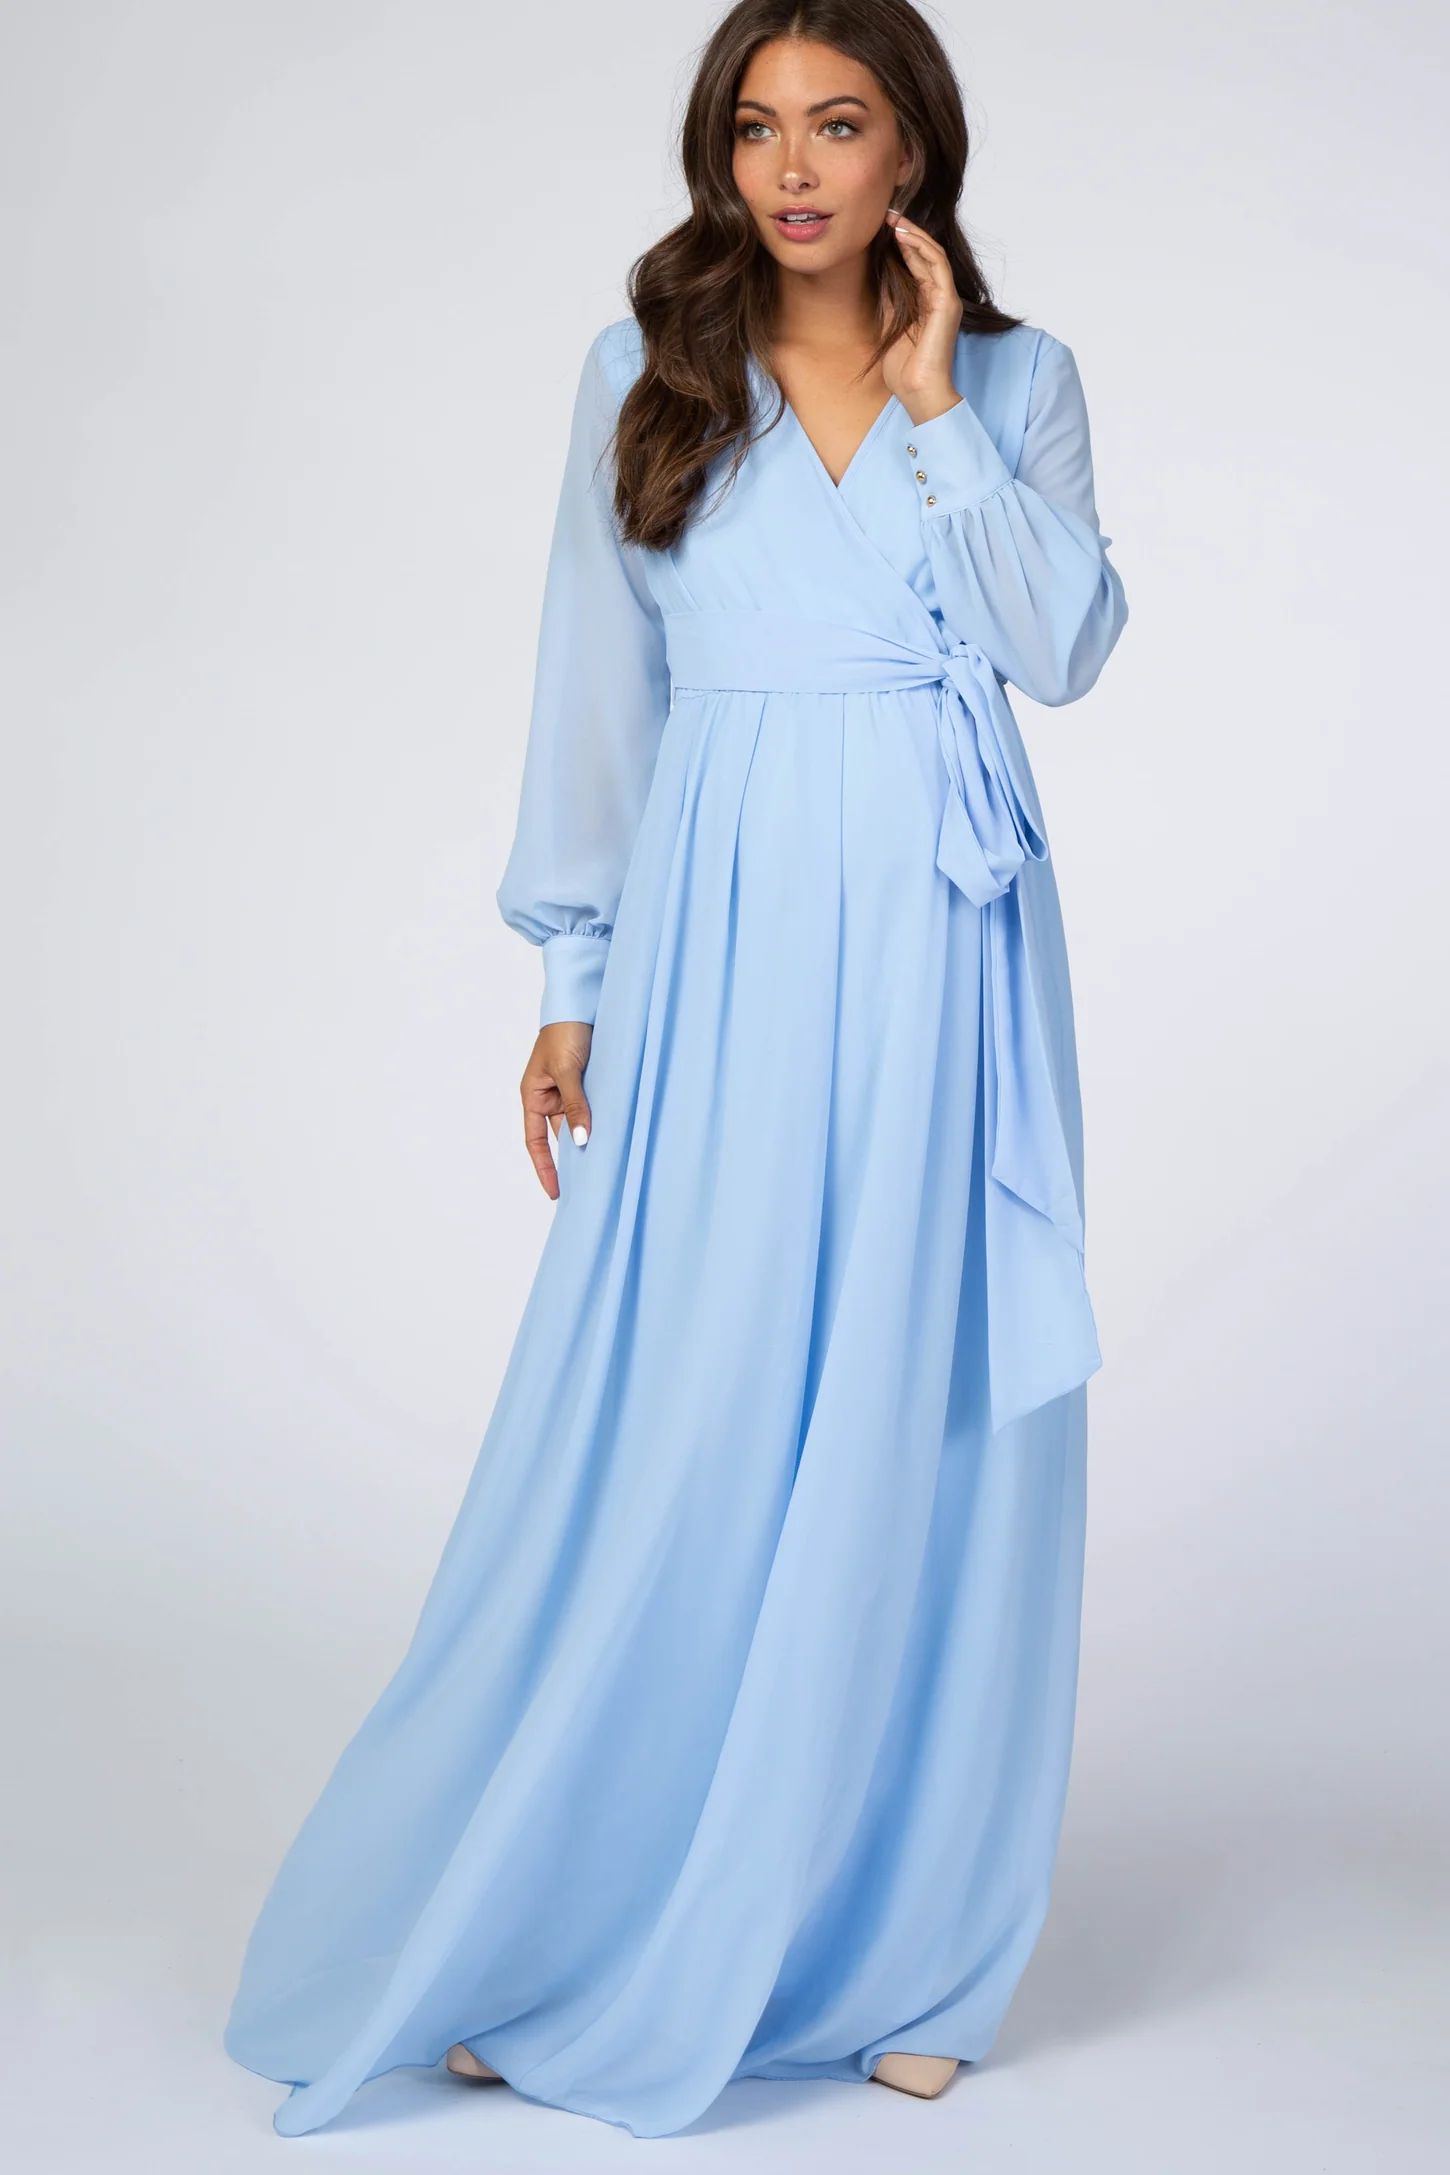 Light Blue Chiffon Long Sleeve Maternity Maxi Dress | PinkBlush Maternity